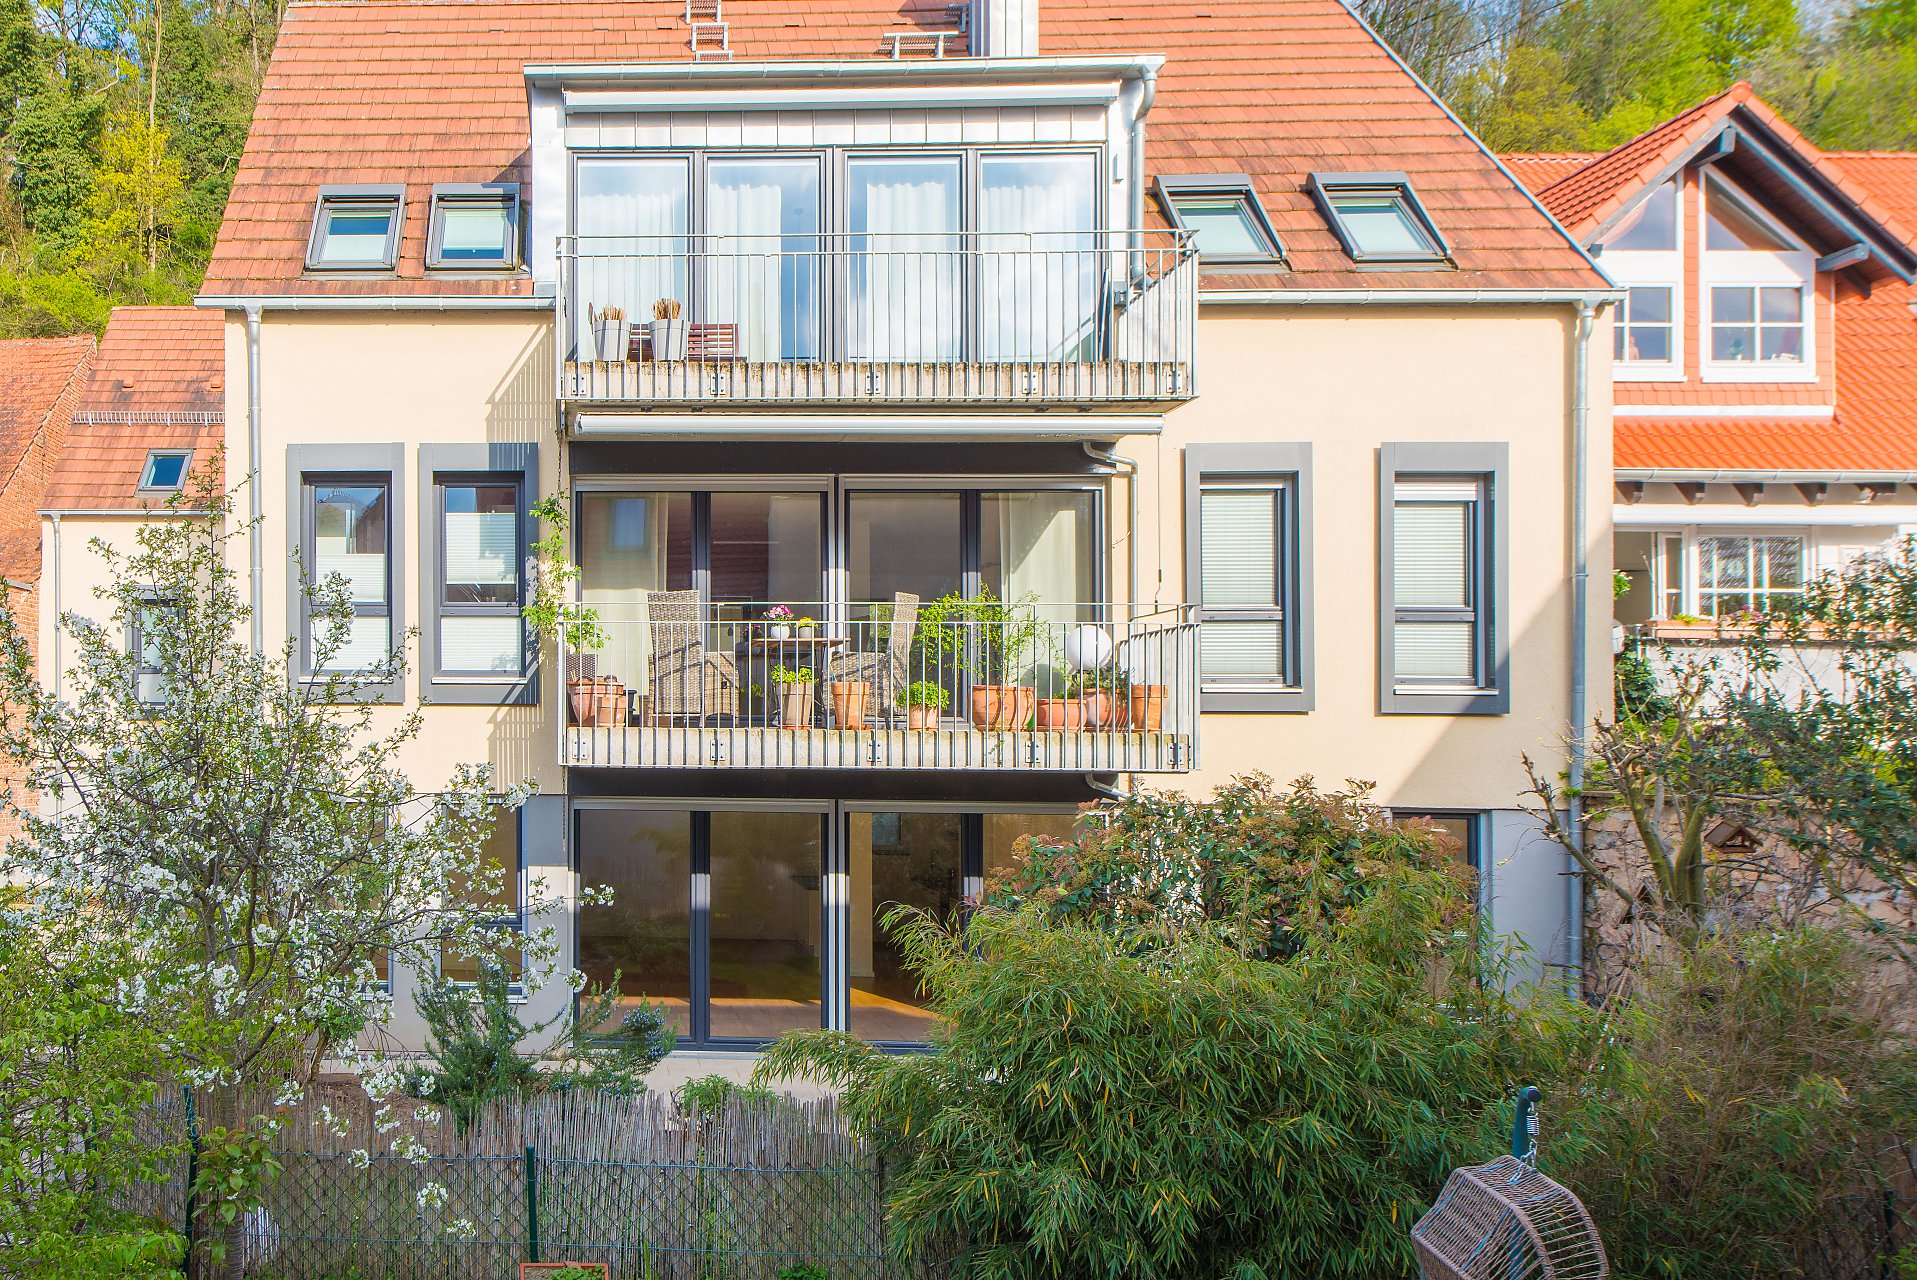 Auerbach Modernes Wohnen, mit eigenem Garten, energieeffizient, mittendrin und doch ganz ruhig  - Oliver Reifferscheid - Immobilienmakler Darmstadt